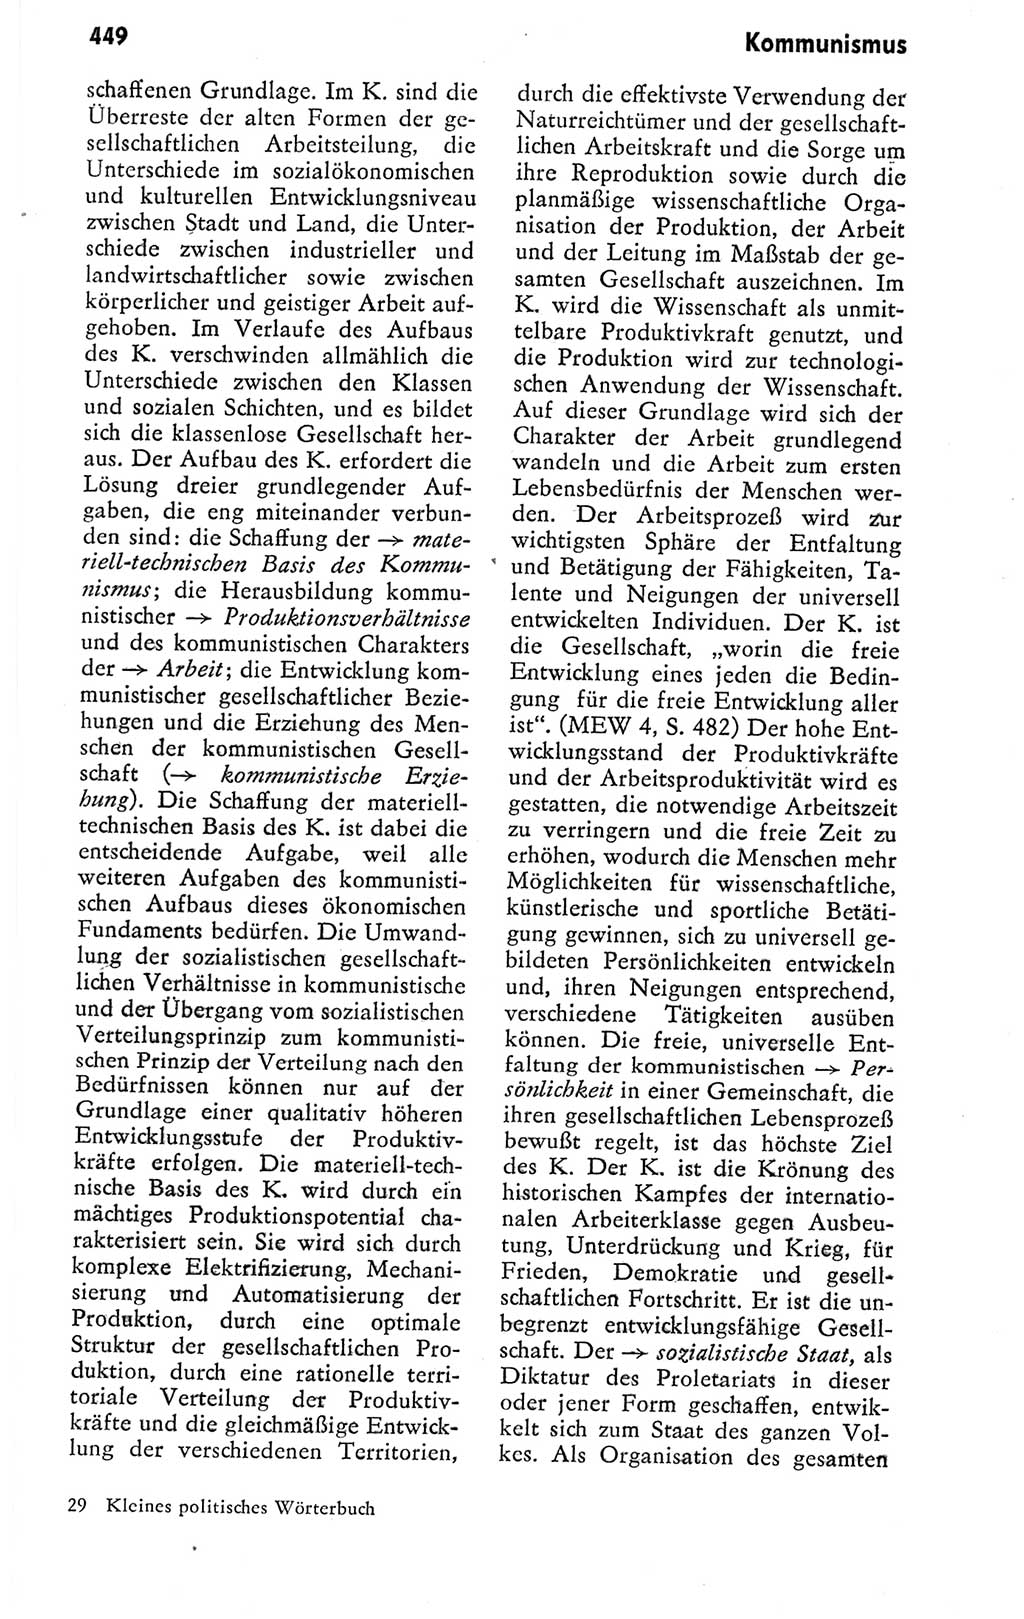 Kleines politisches Wörterbuch [Deutsche Demokratische Republik (DDR)] 1978, Seite 449 (Kl. pol. Wb. DDR 1978, S. 449)